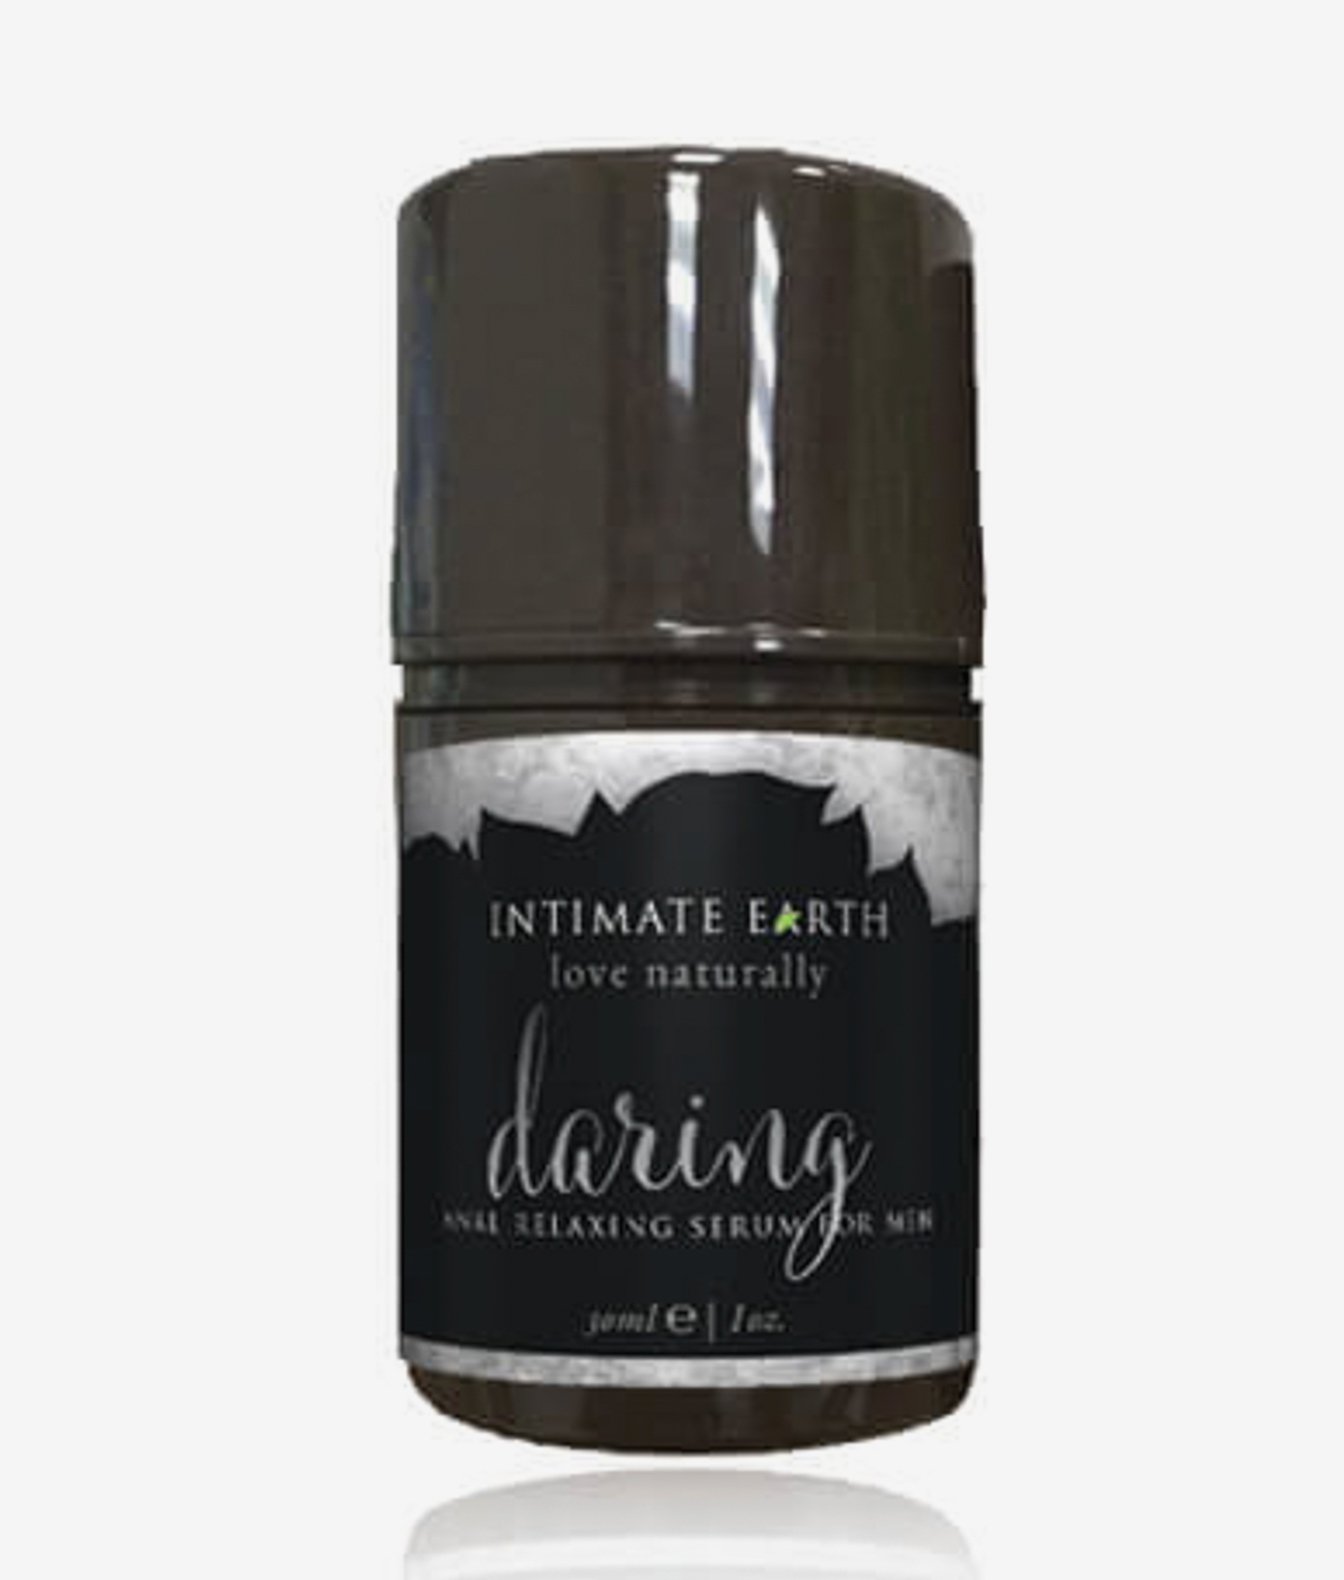 Intimate Earth Daring relaksujące serum analne dla mężczyzn